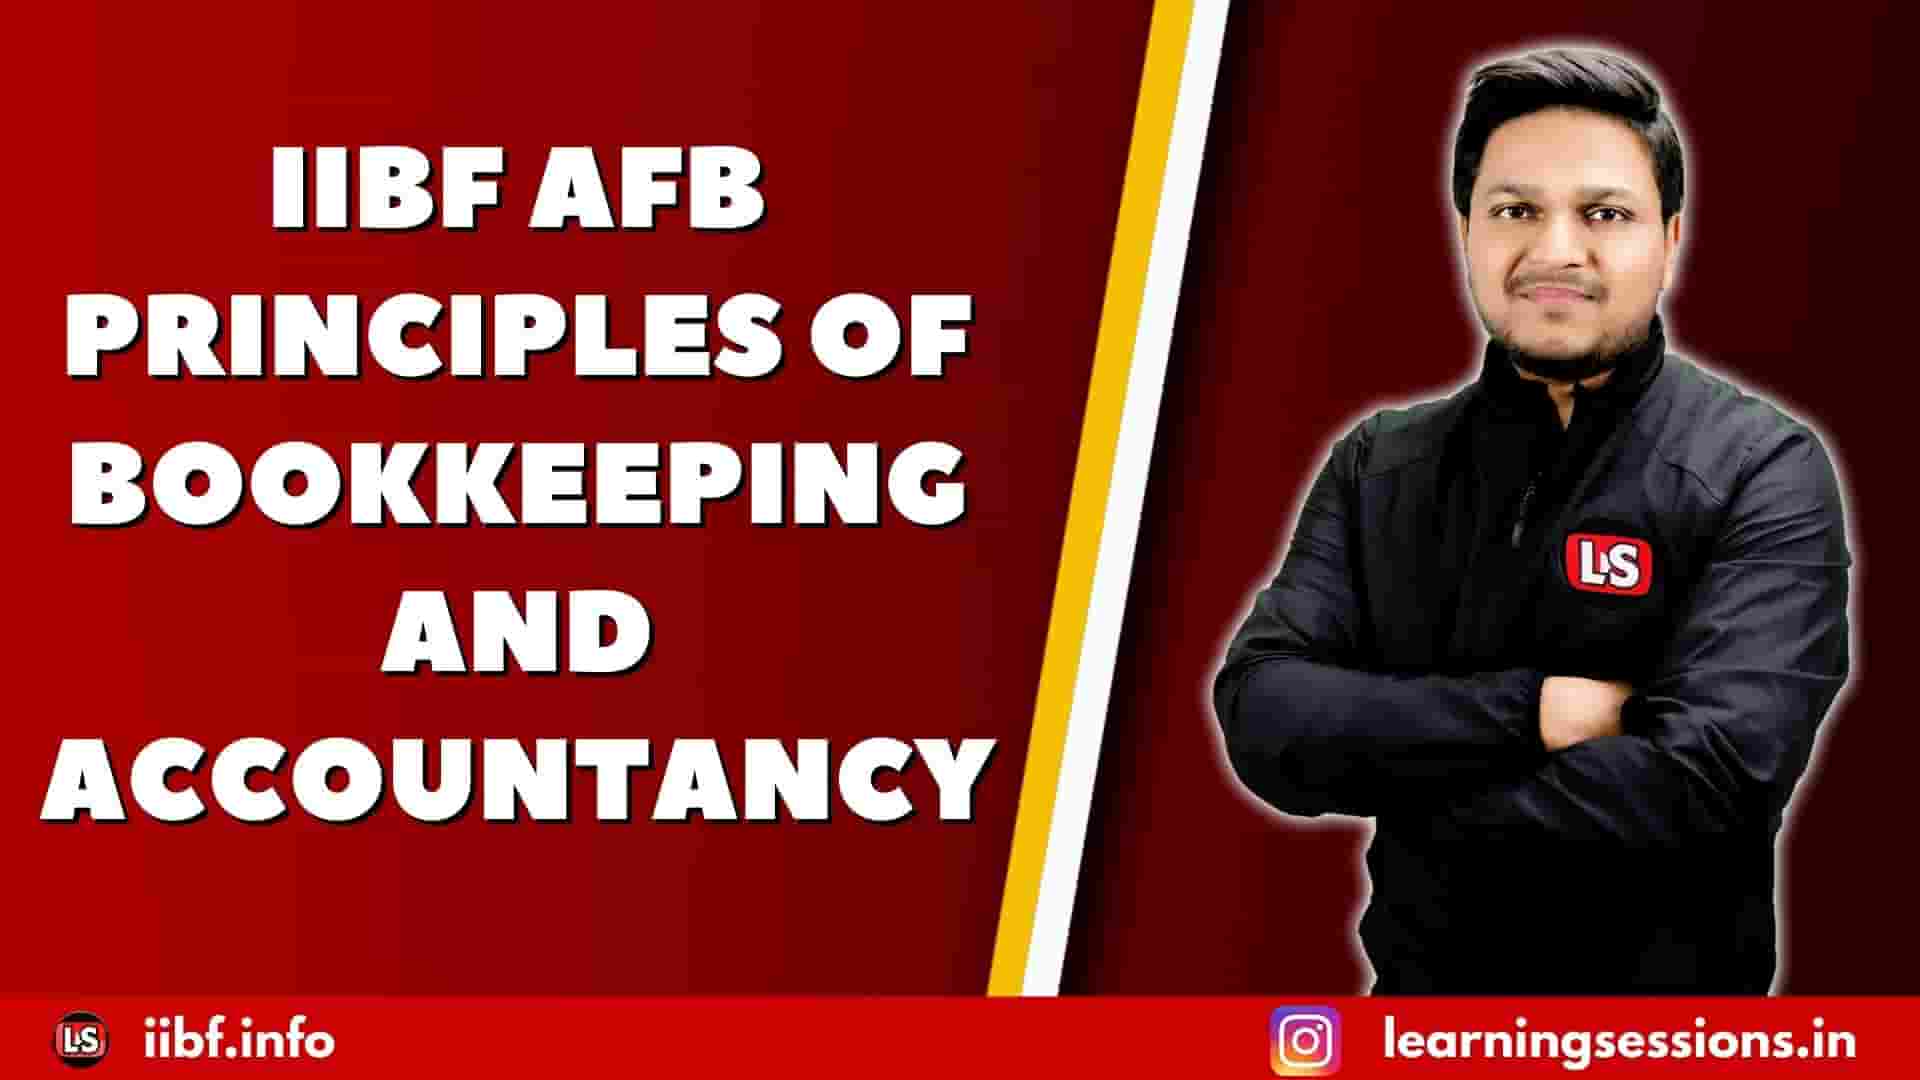 IIBF AFB PRINCIPLES OF BOOKKEEPING & ACCOUNTANCY